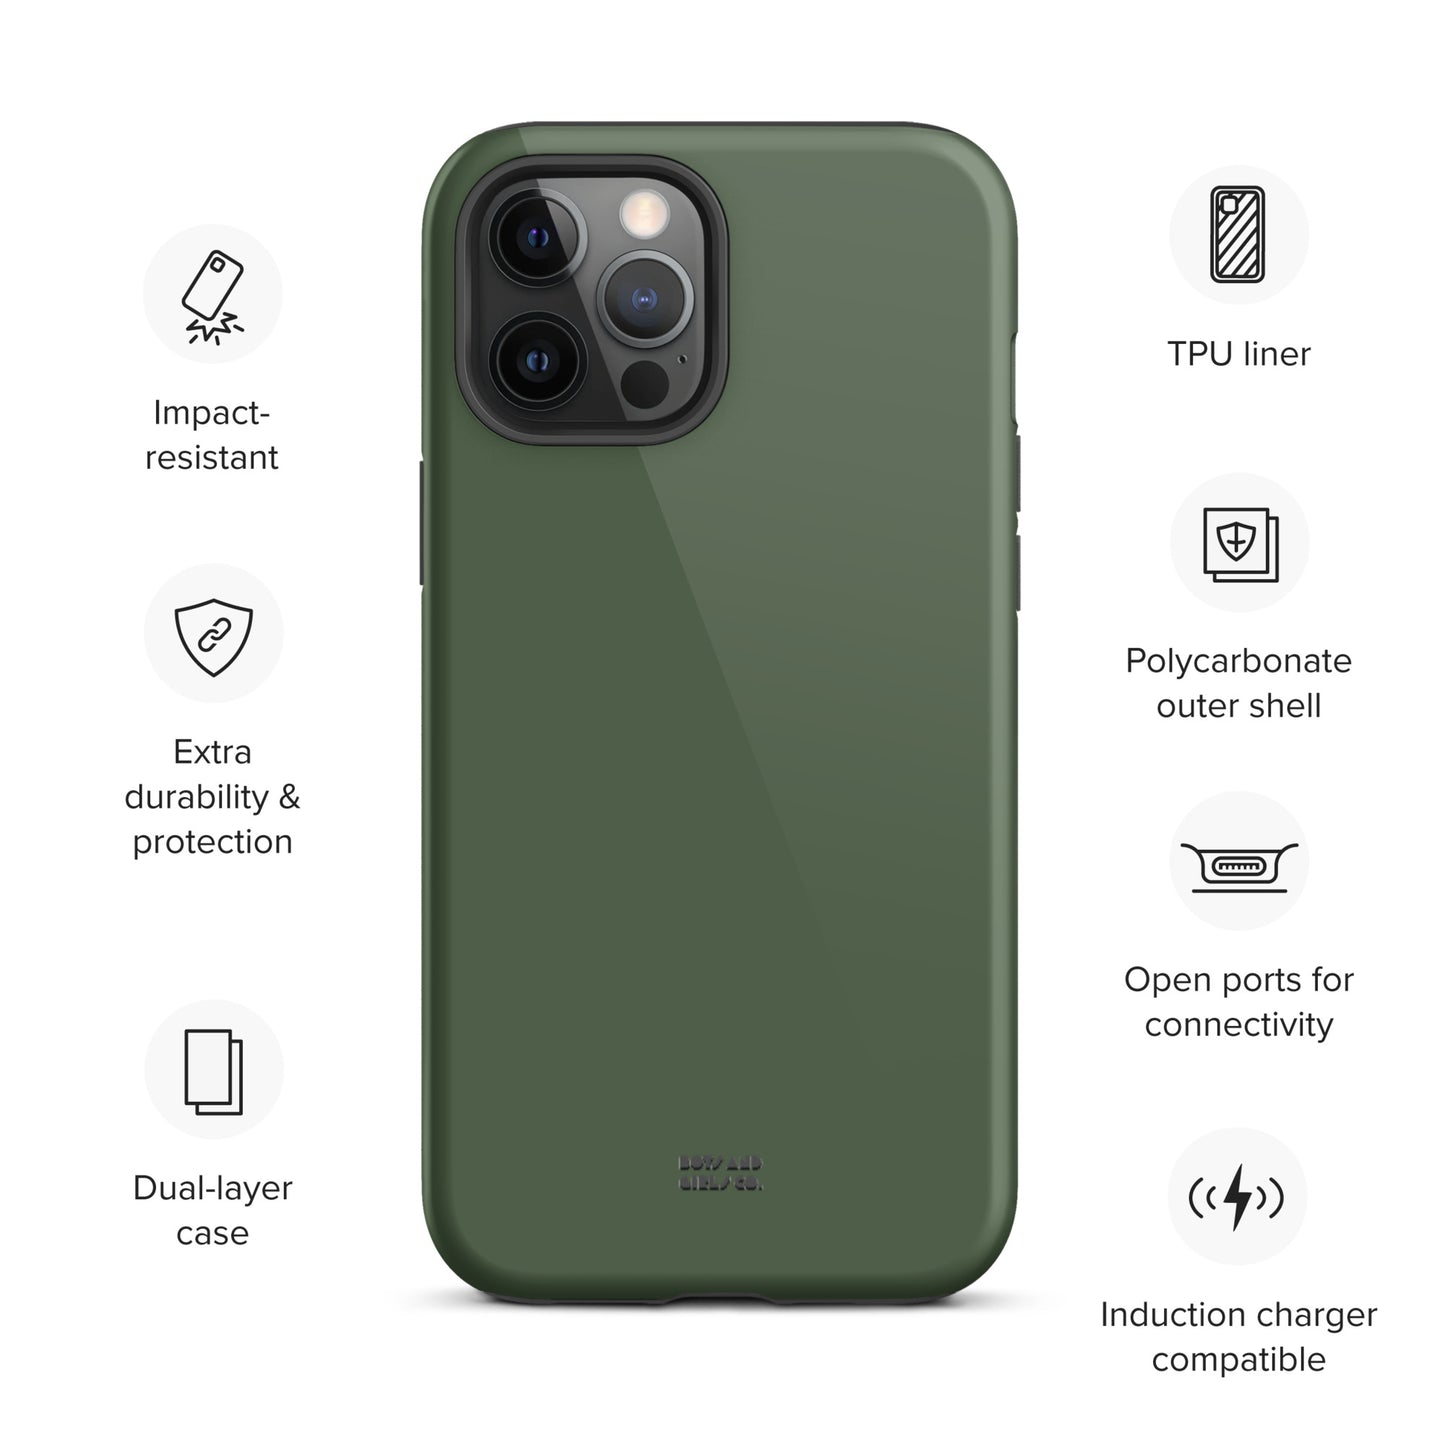 JUNGLE GREEN - Tough iPhone case